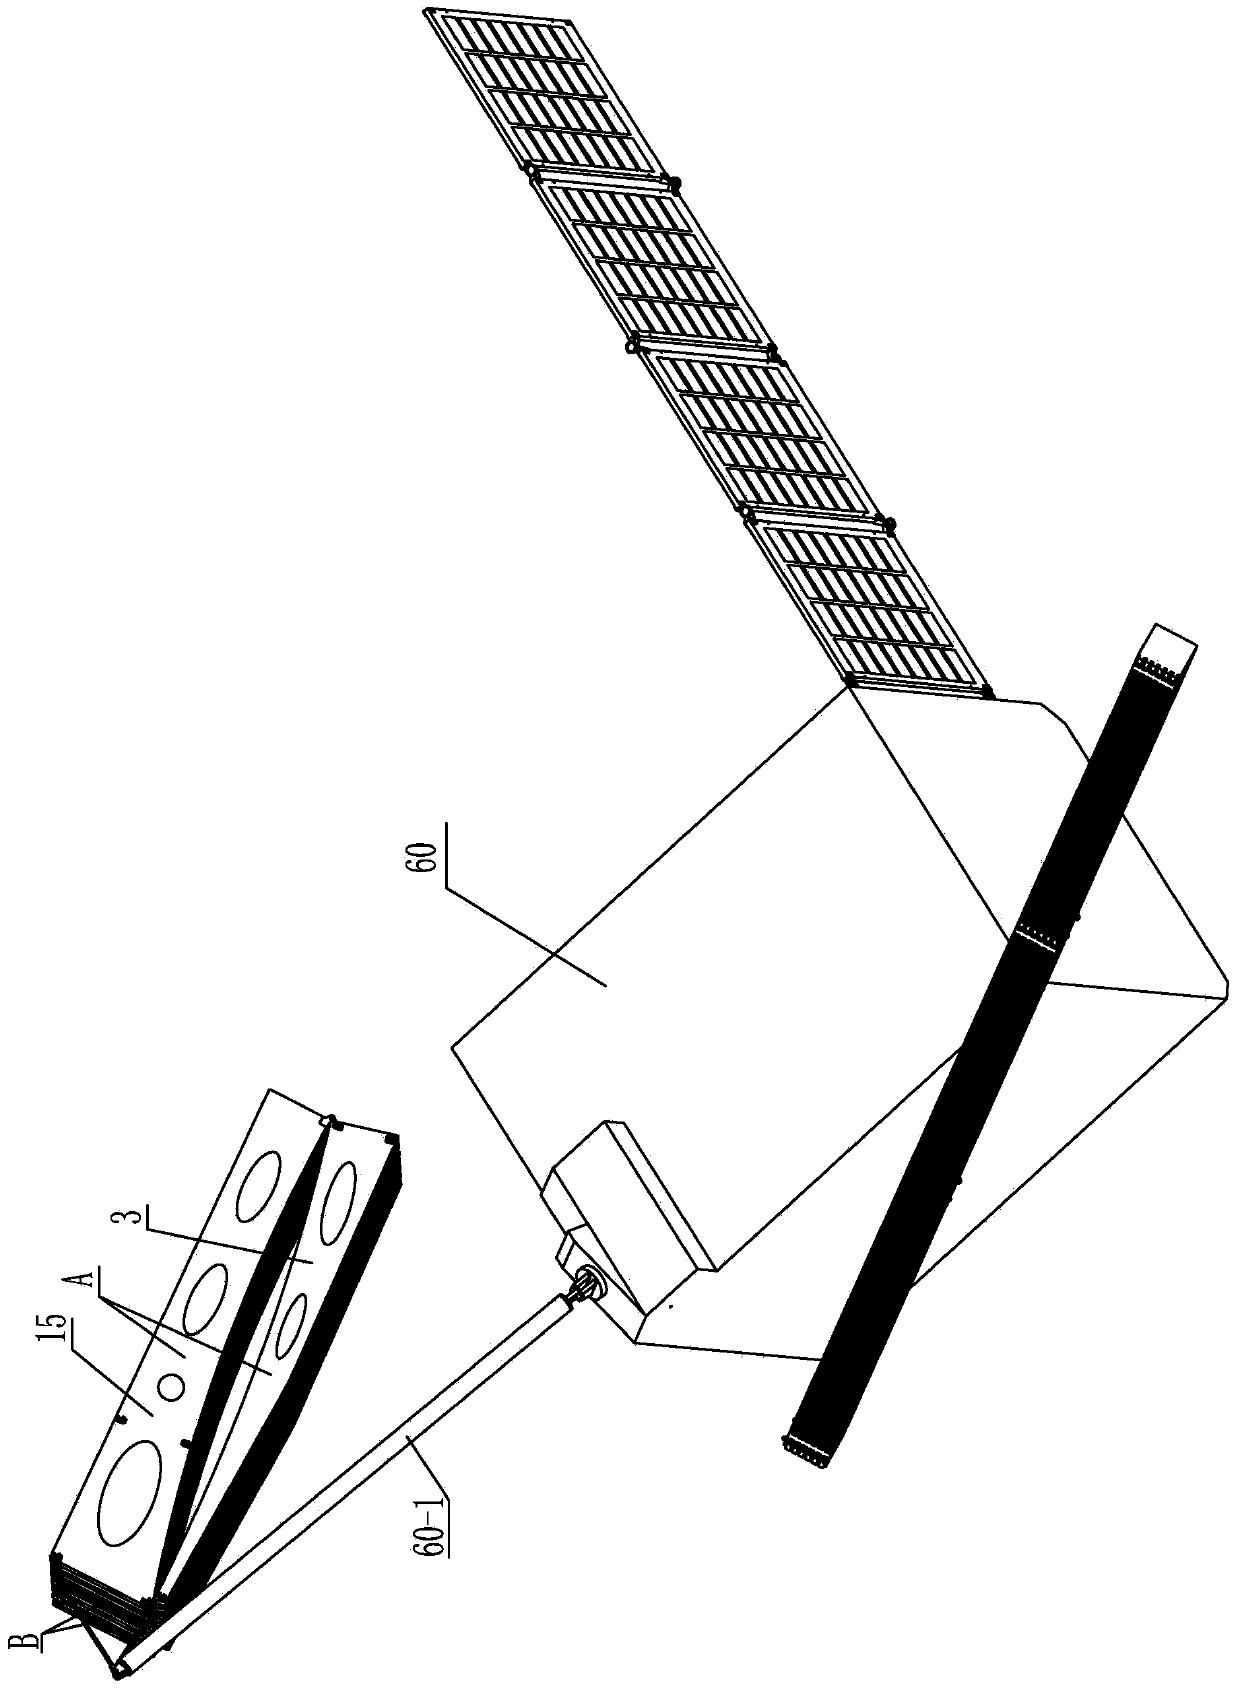 Modularized space parabolic cylinder antenna folding and unfolding mechanism